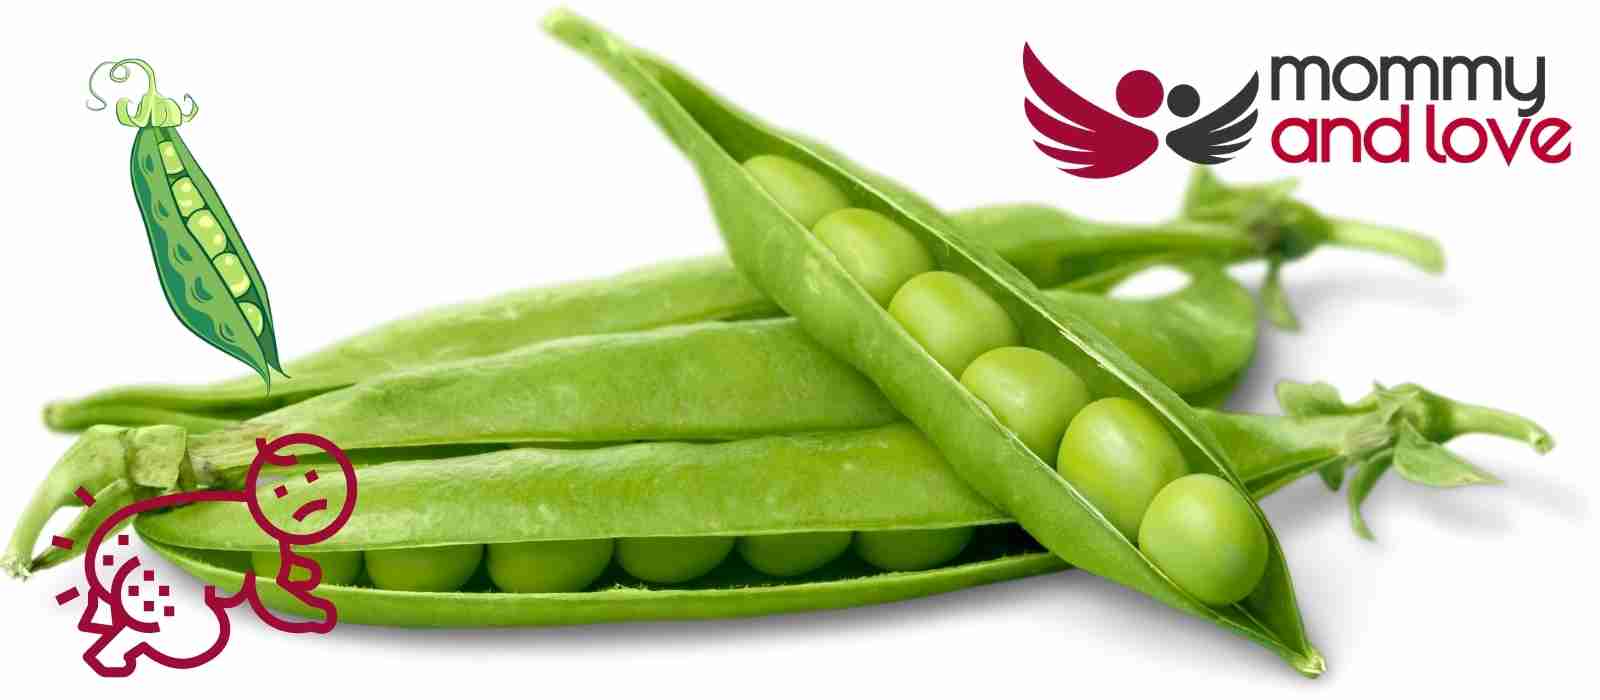 Can Peas Cause Diaper Rash